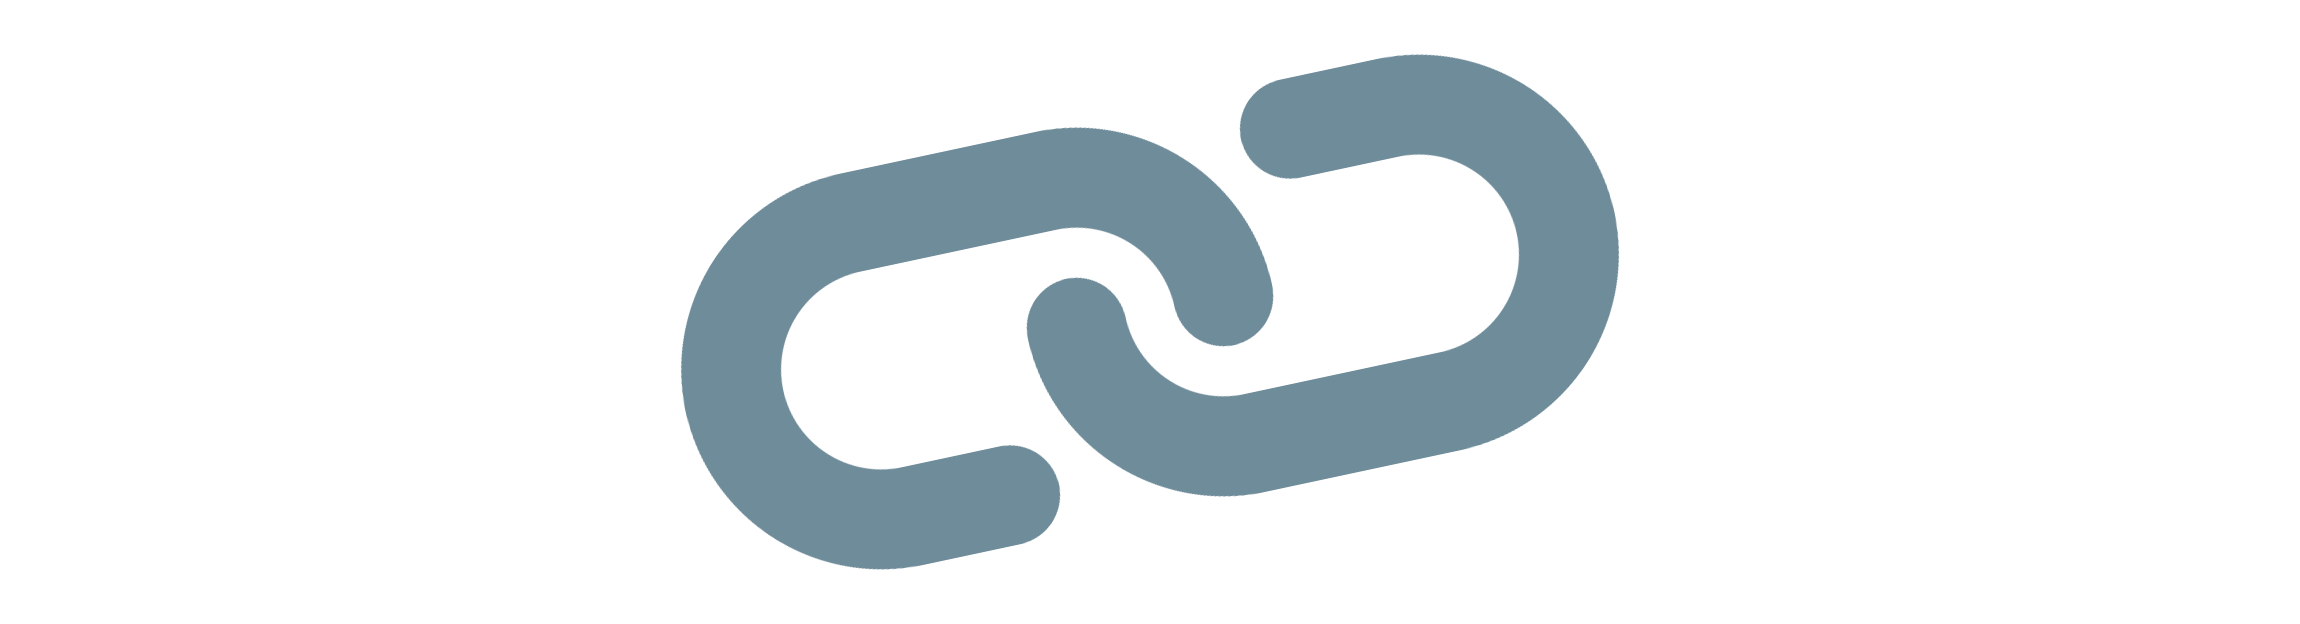 Campany 5 logo